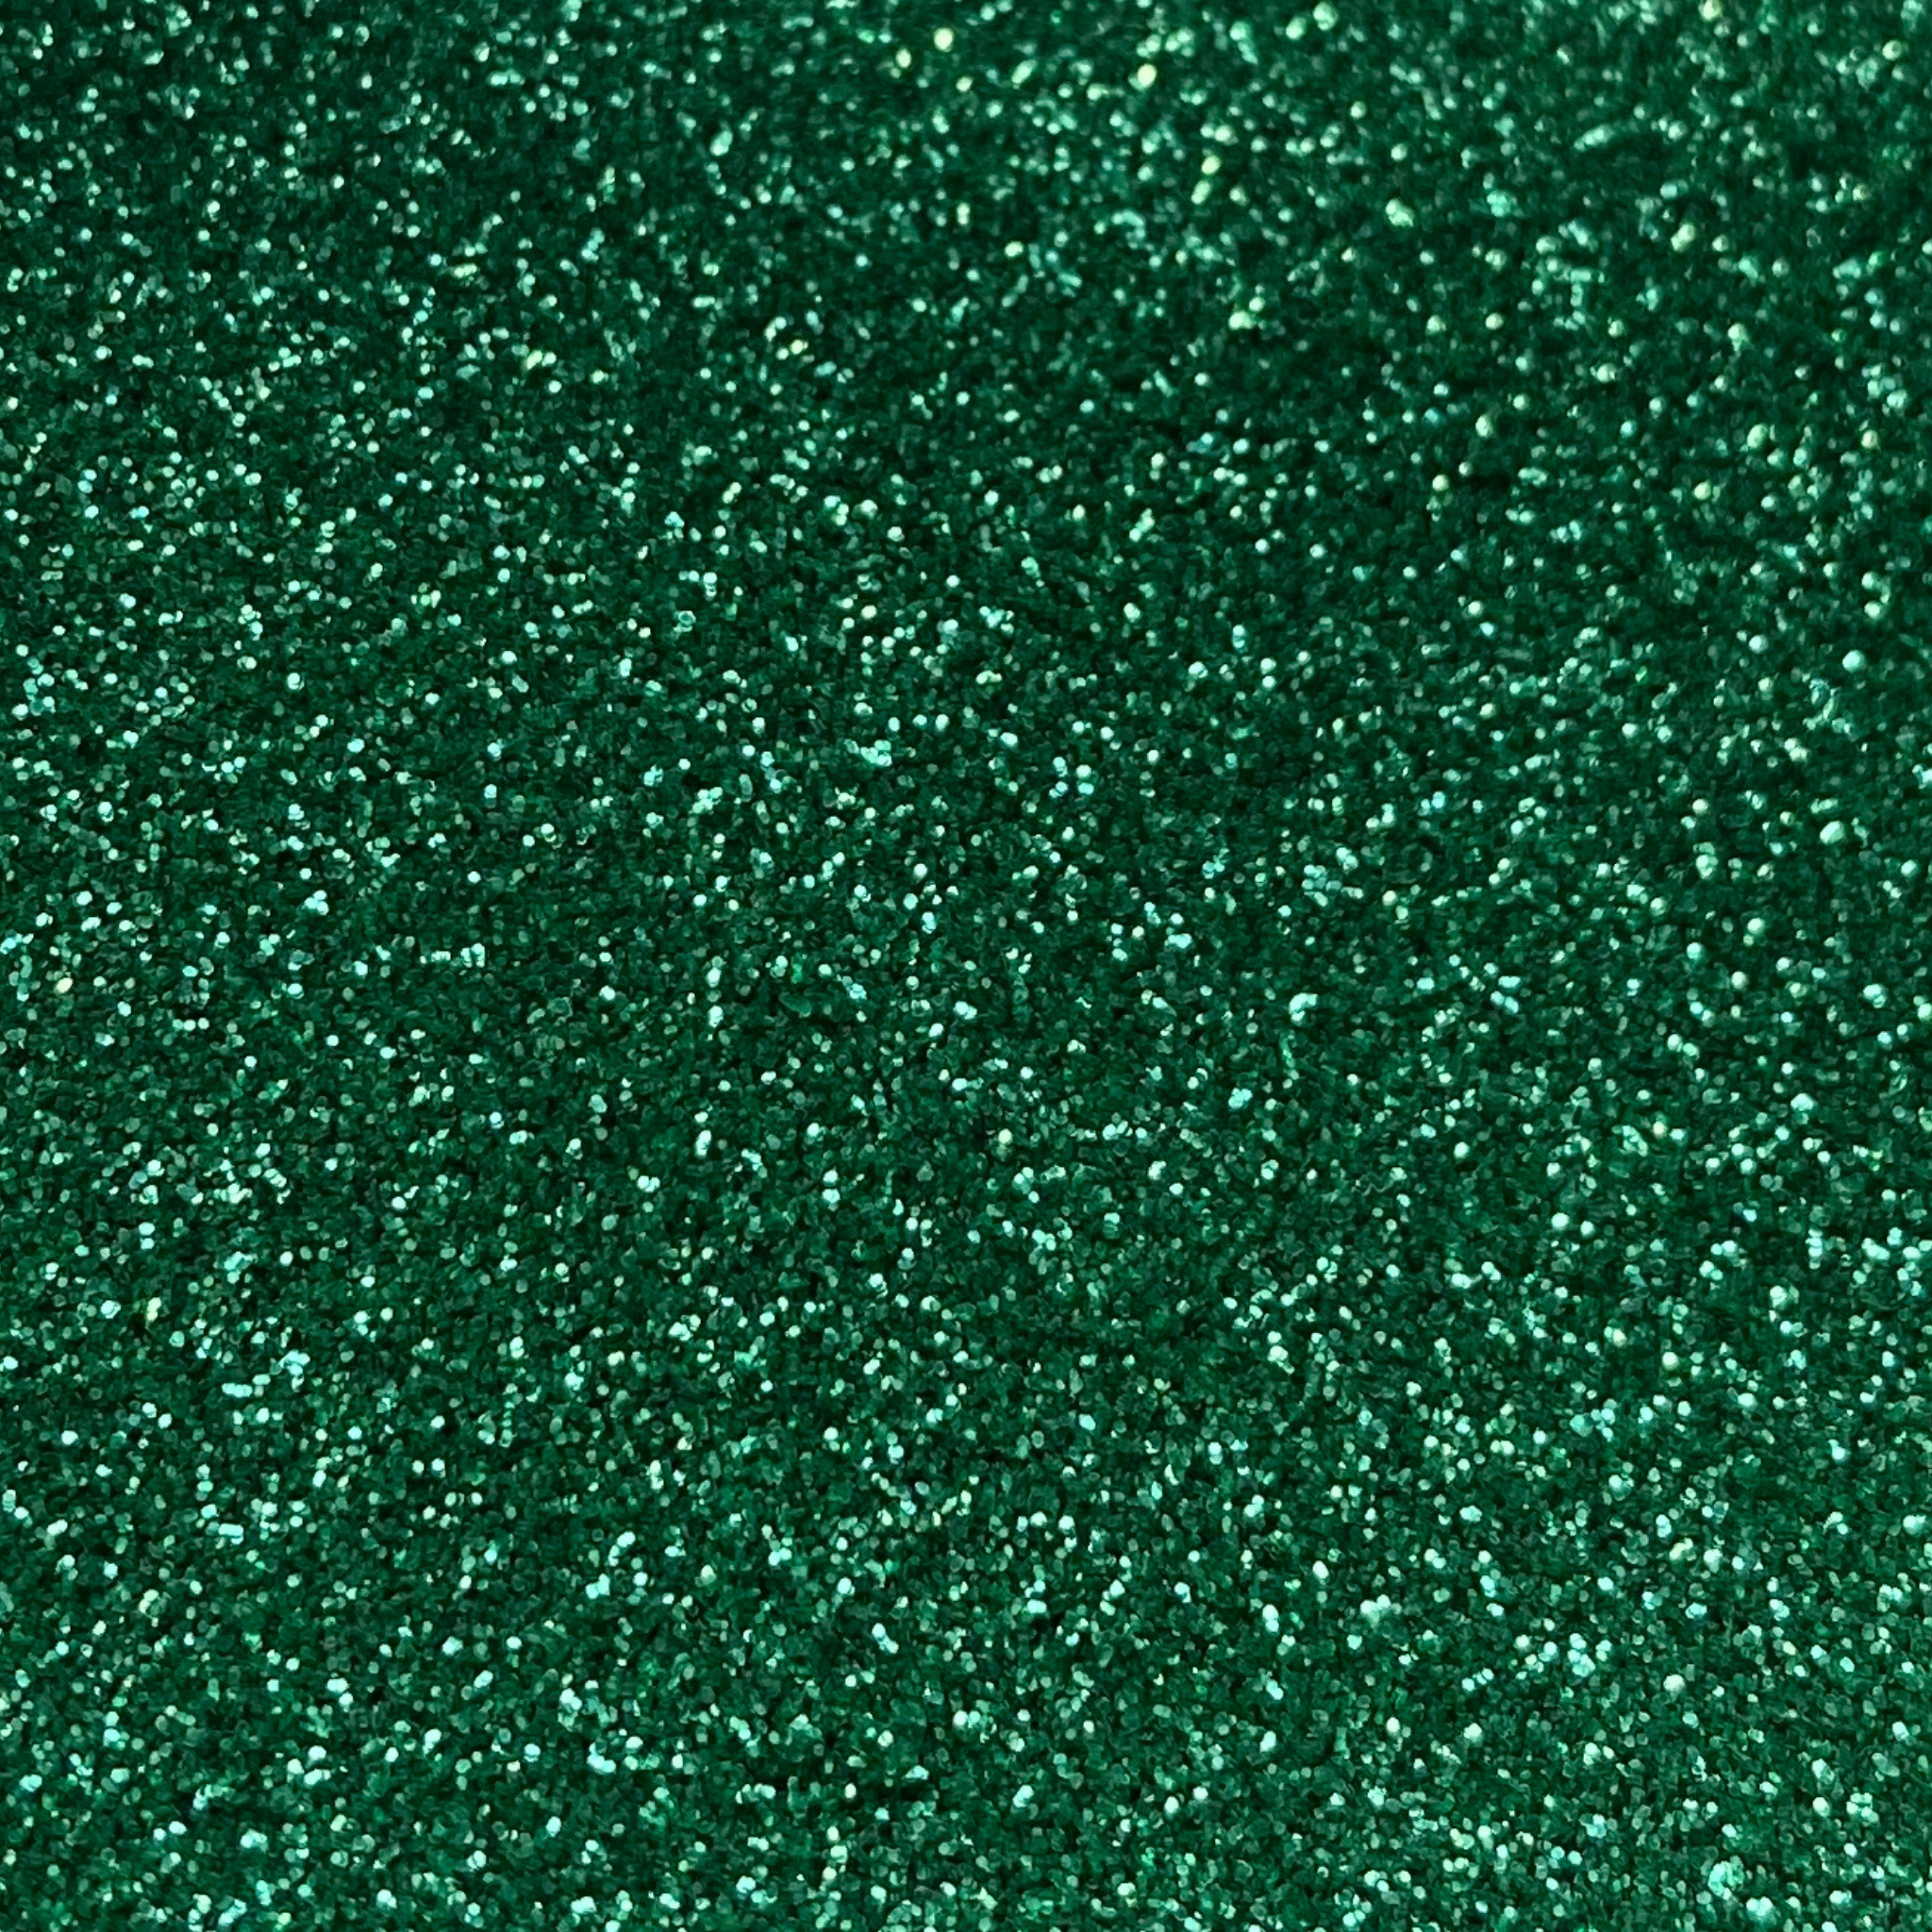 Green fine biodegradable cosmetic grade glitter.